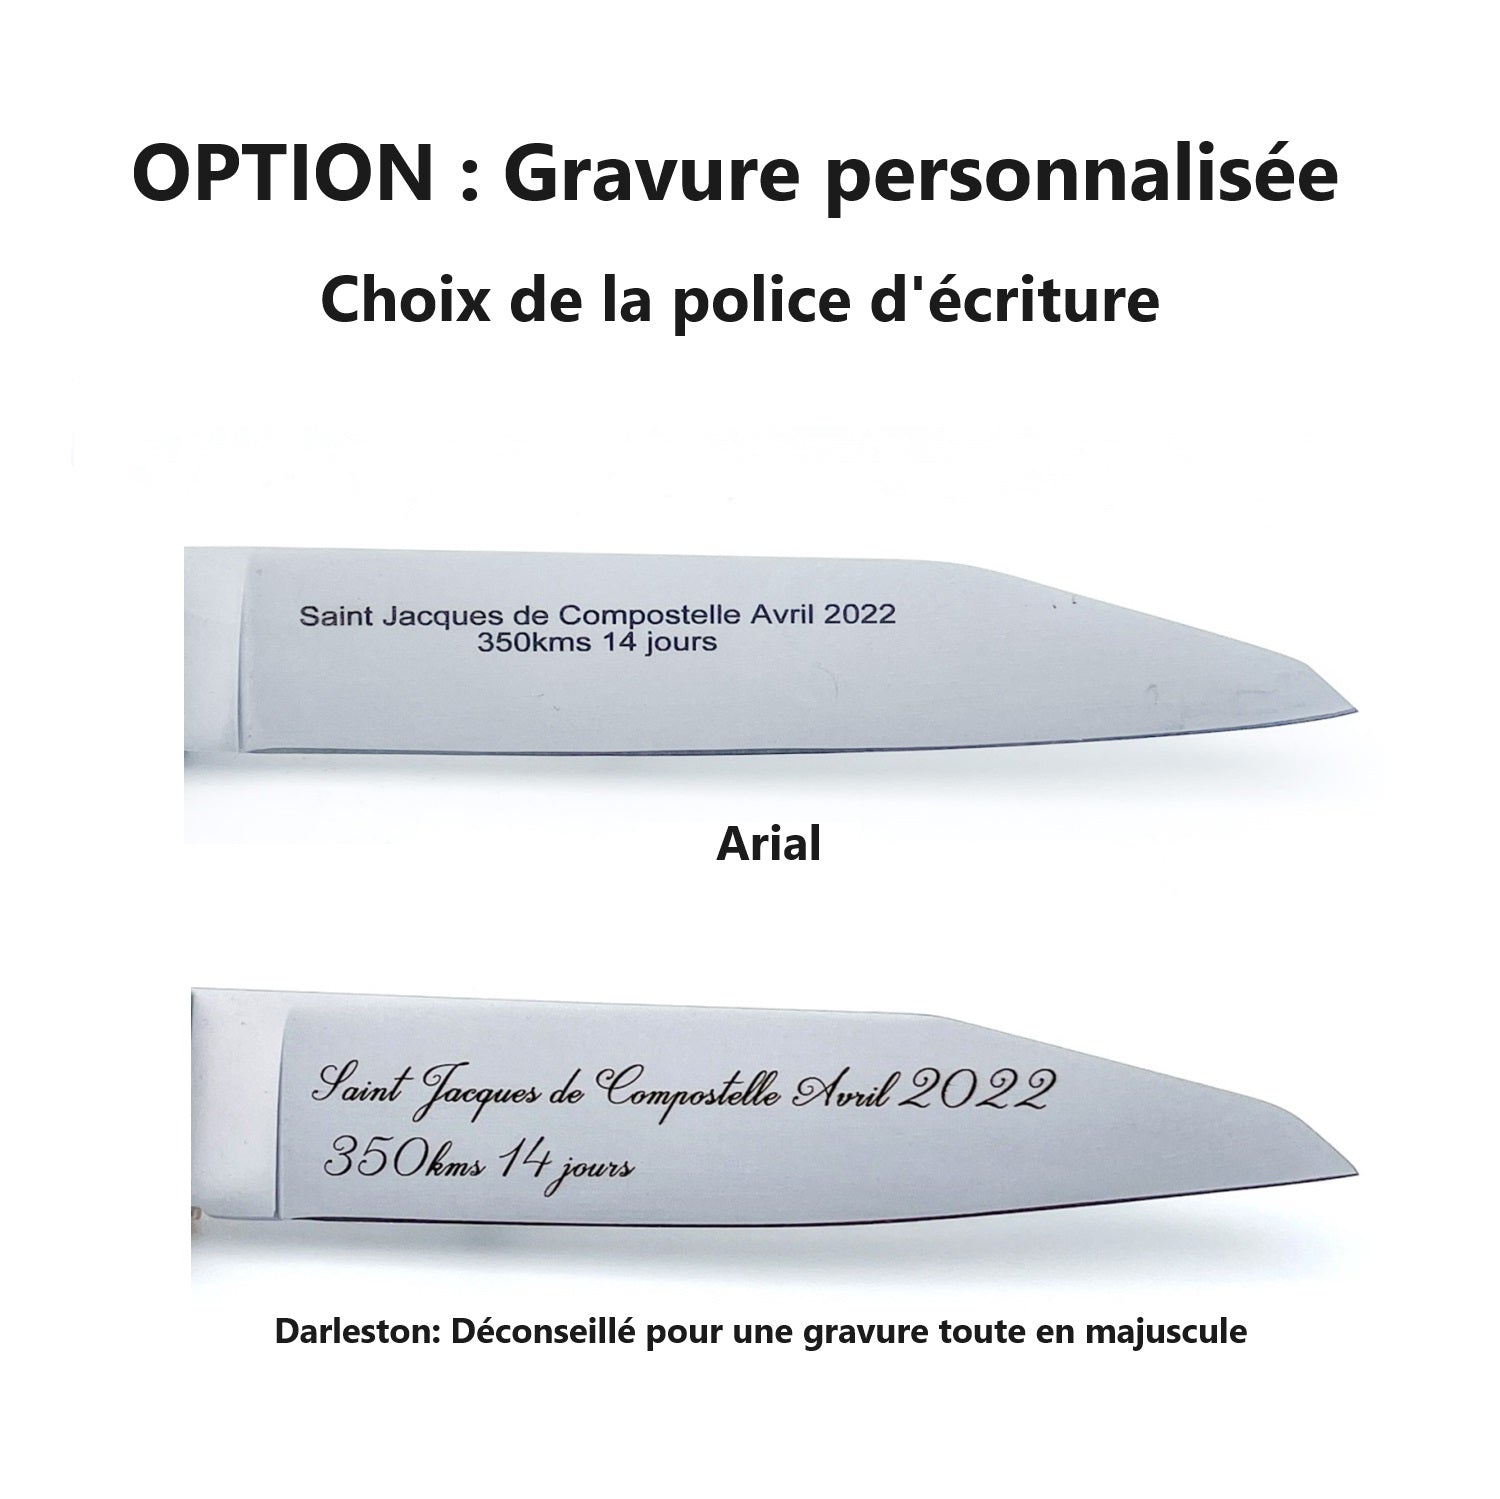 Officially licensed Dakar knife